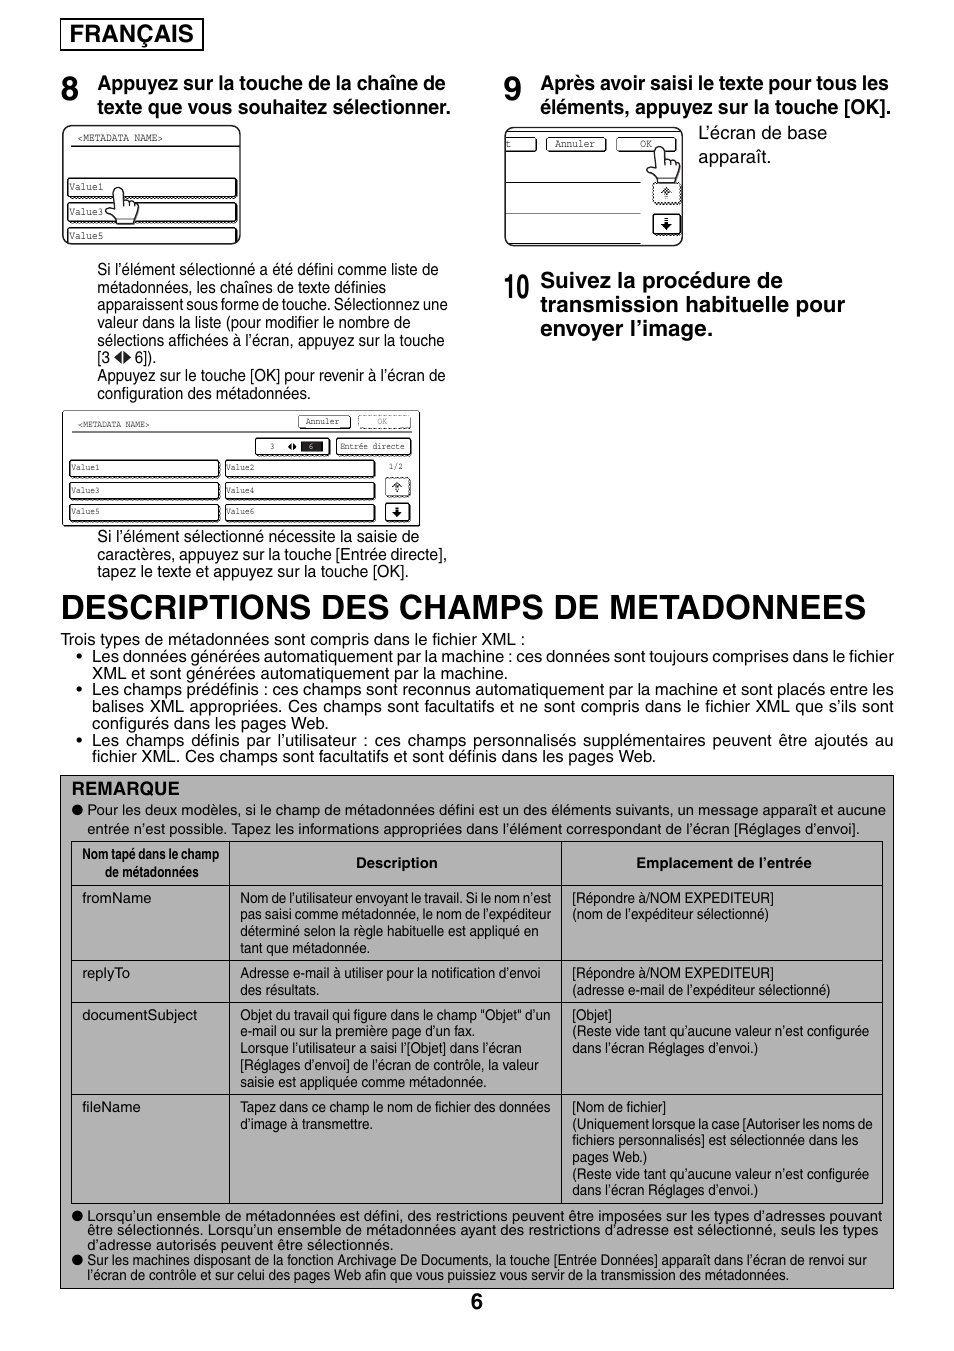 Descriptions des champs de metadonnees, Français | Sharp MX-M1055 User Manual | Page 20 / 112